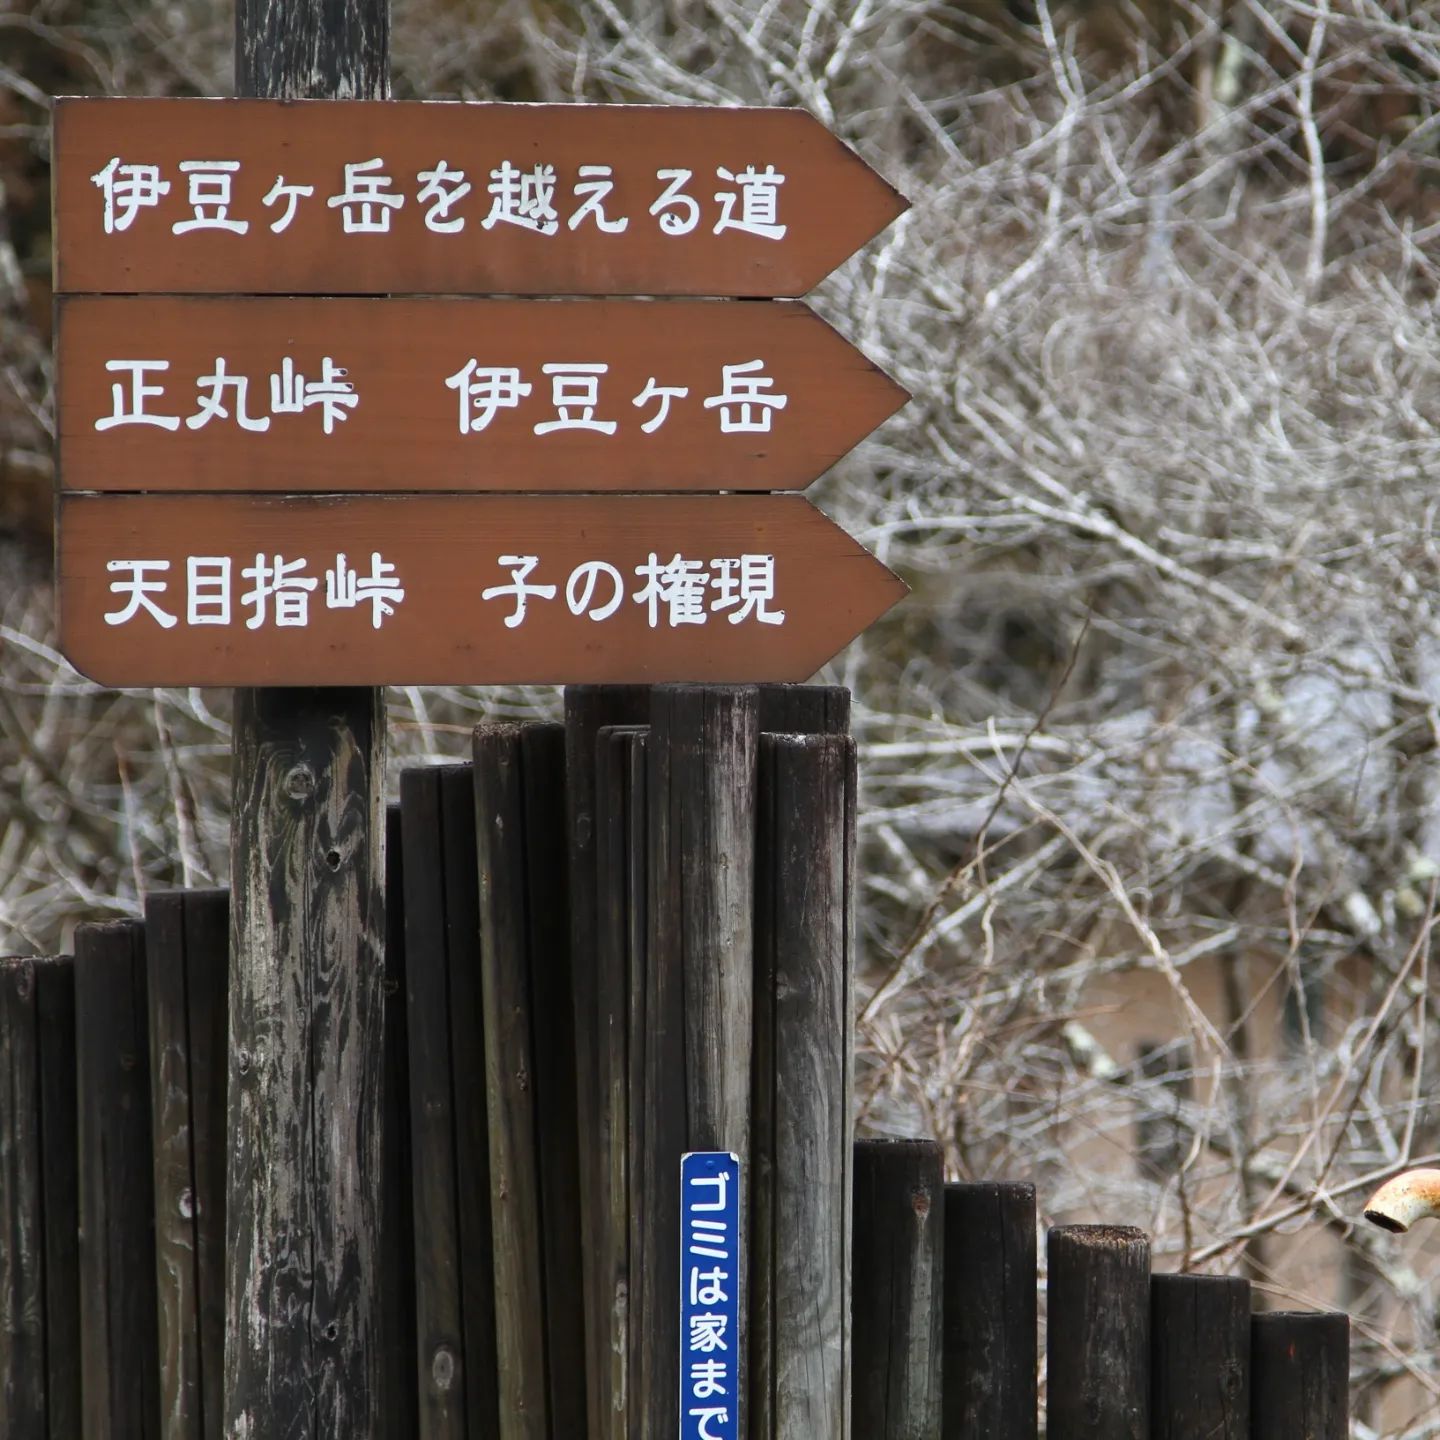 2/19にyama楽で伊豆ヶ岳へ行ってきました。